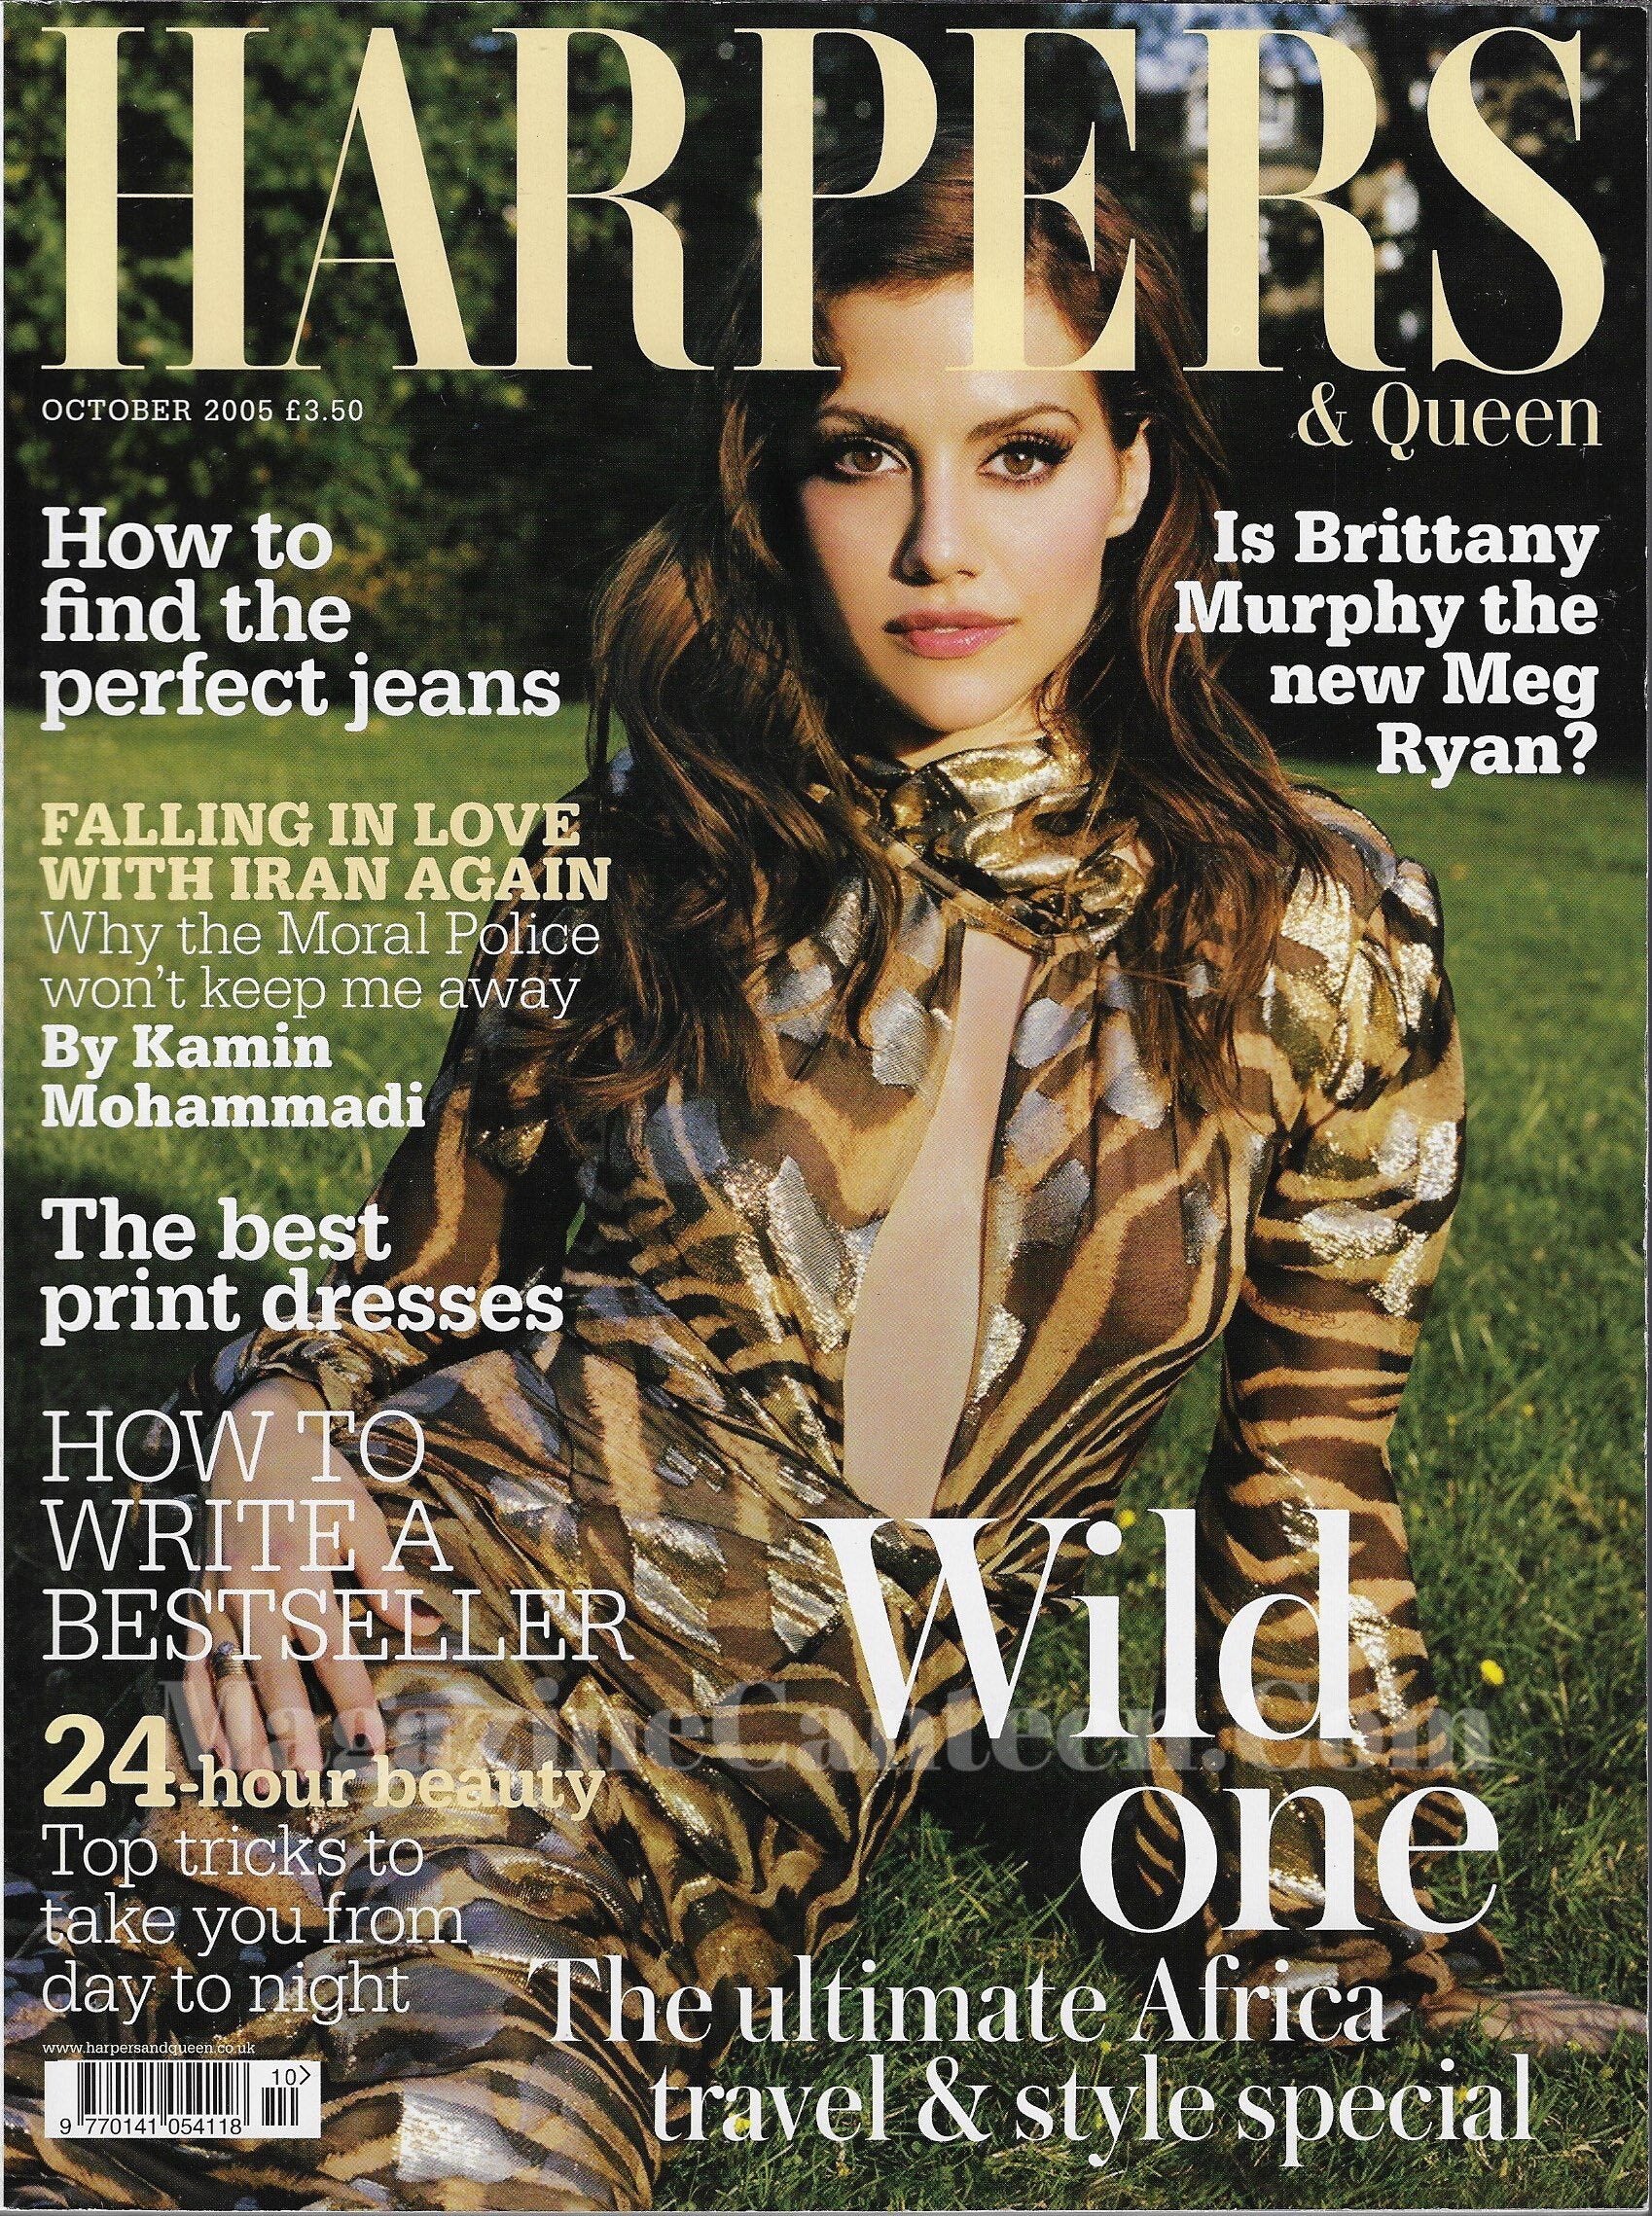  Harpers & Queen Magazine - Brittany Murphy rosamund pike